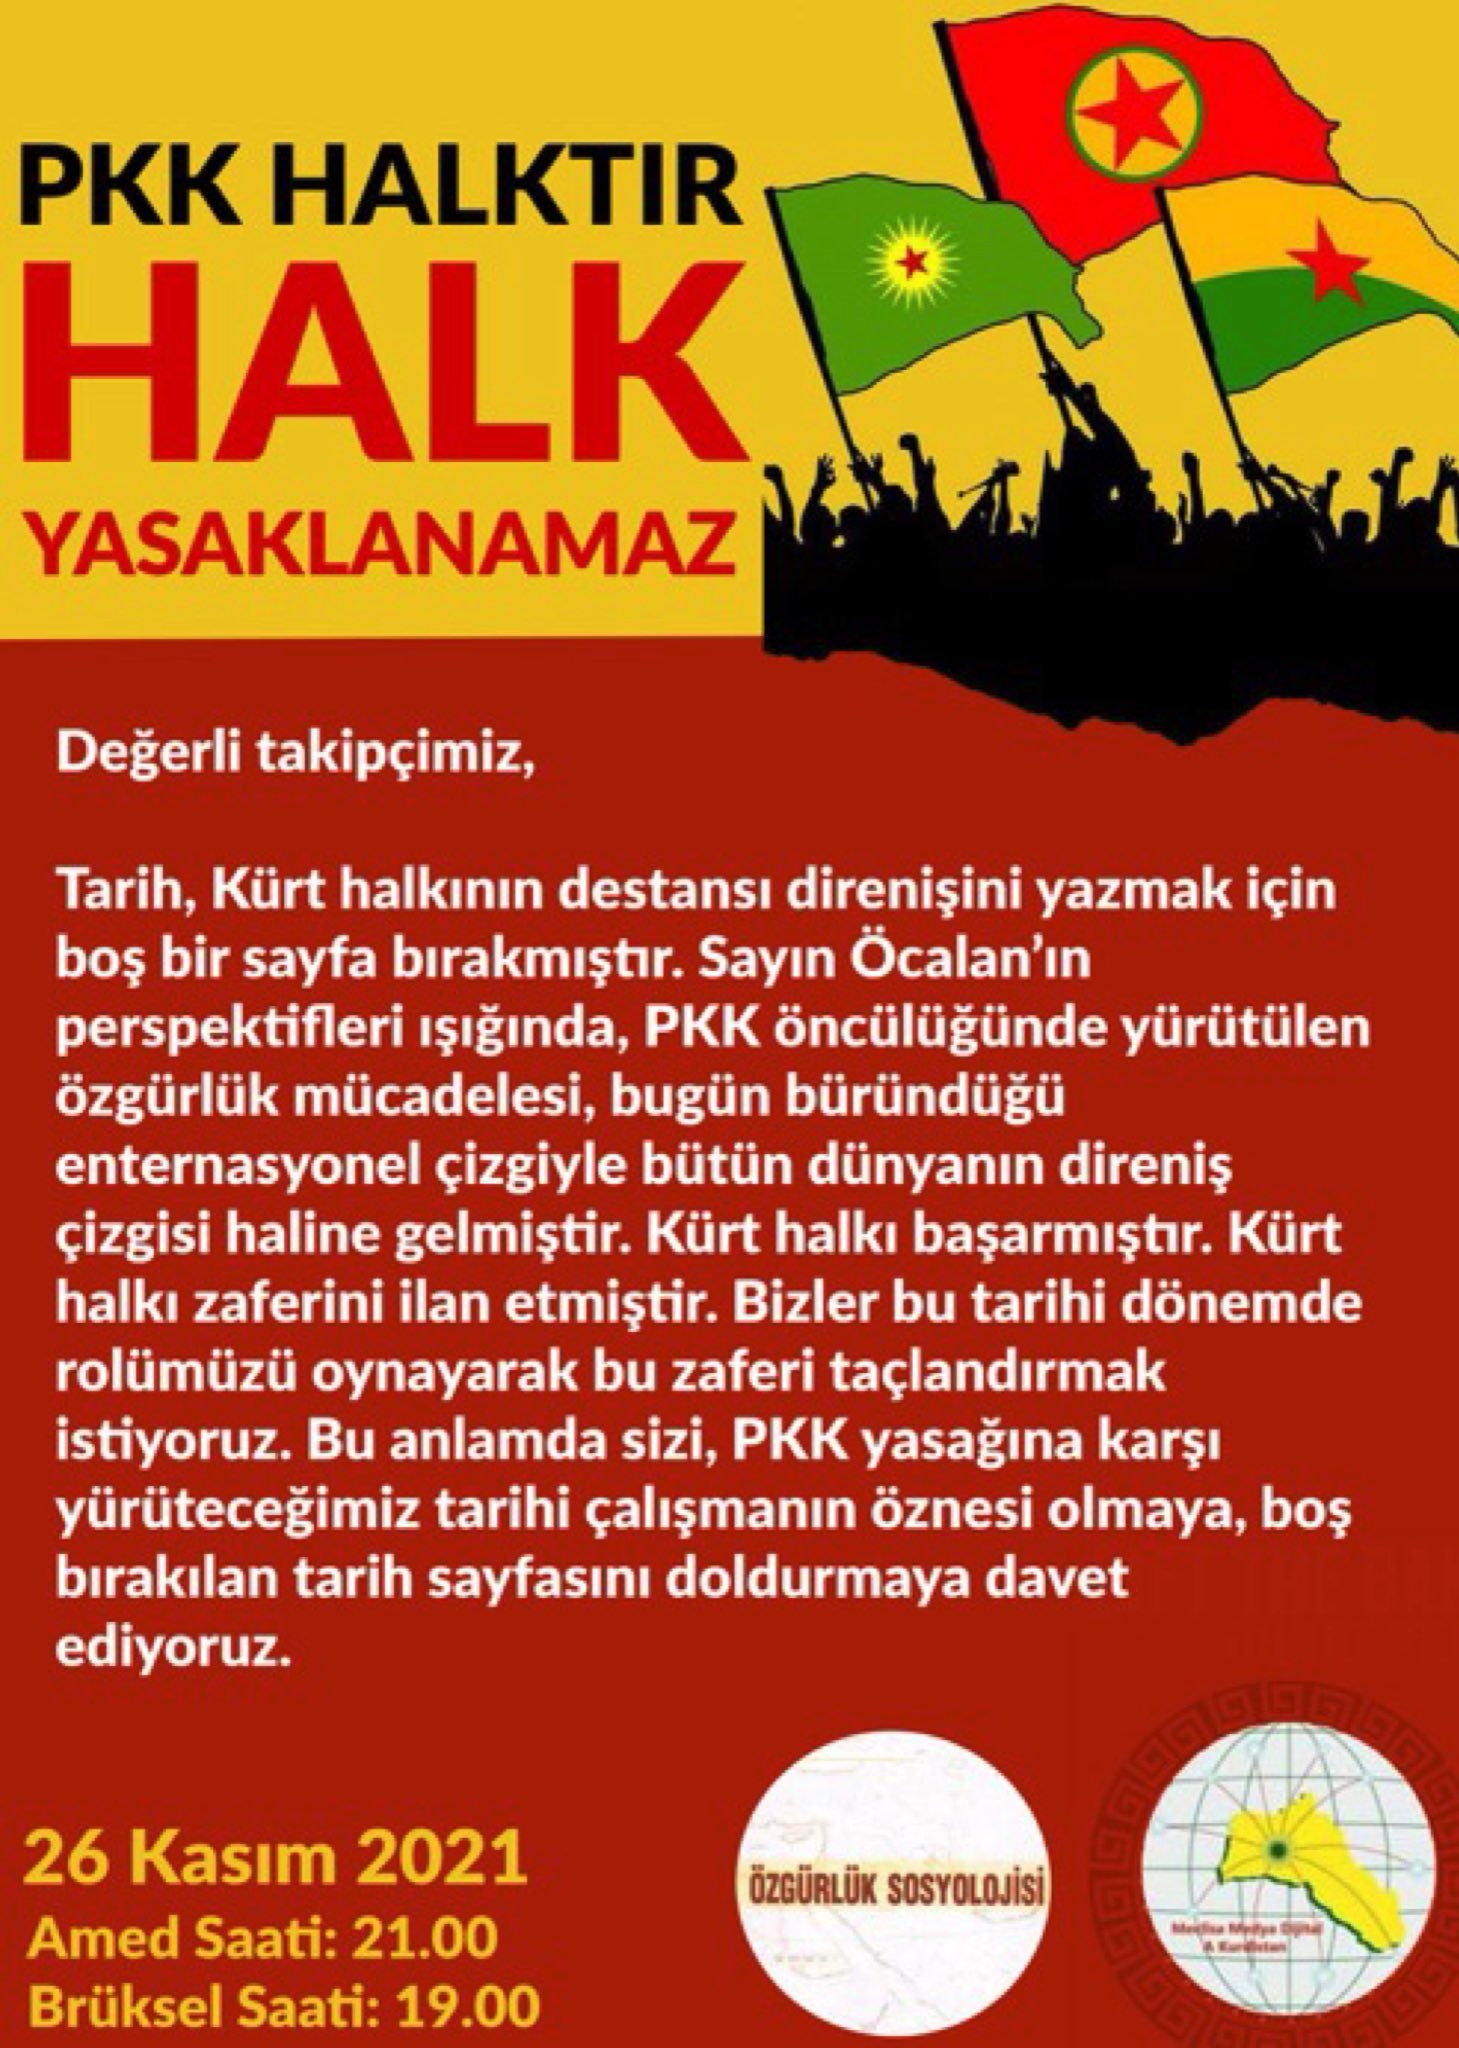 PKK HALKTIR HALK YASAKLANAMAZ